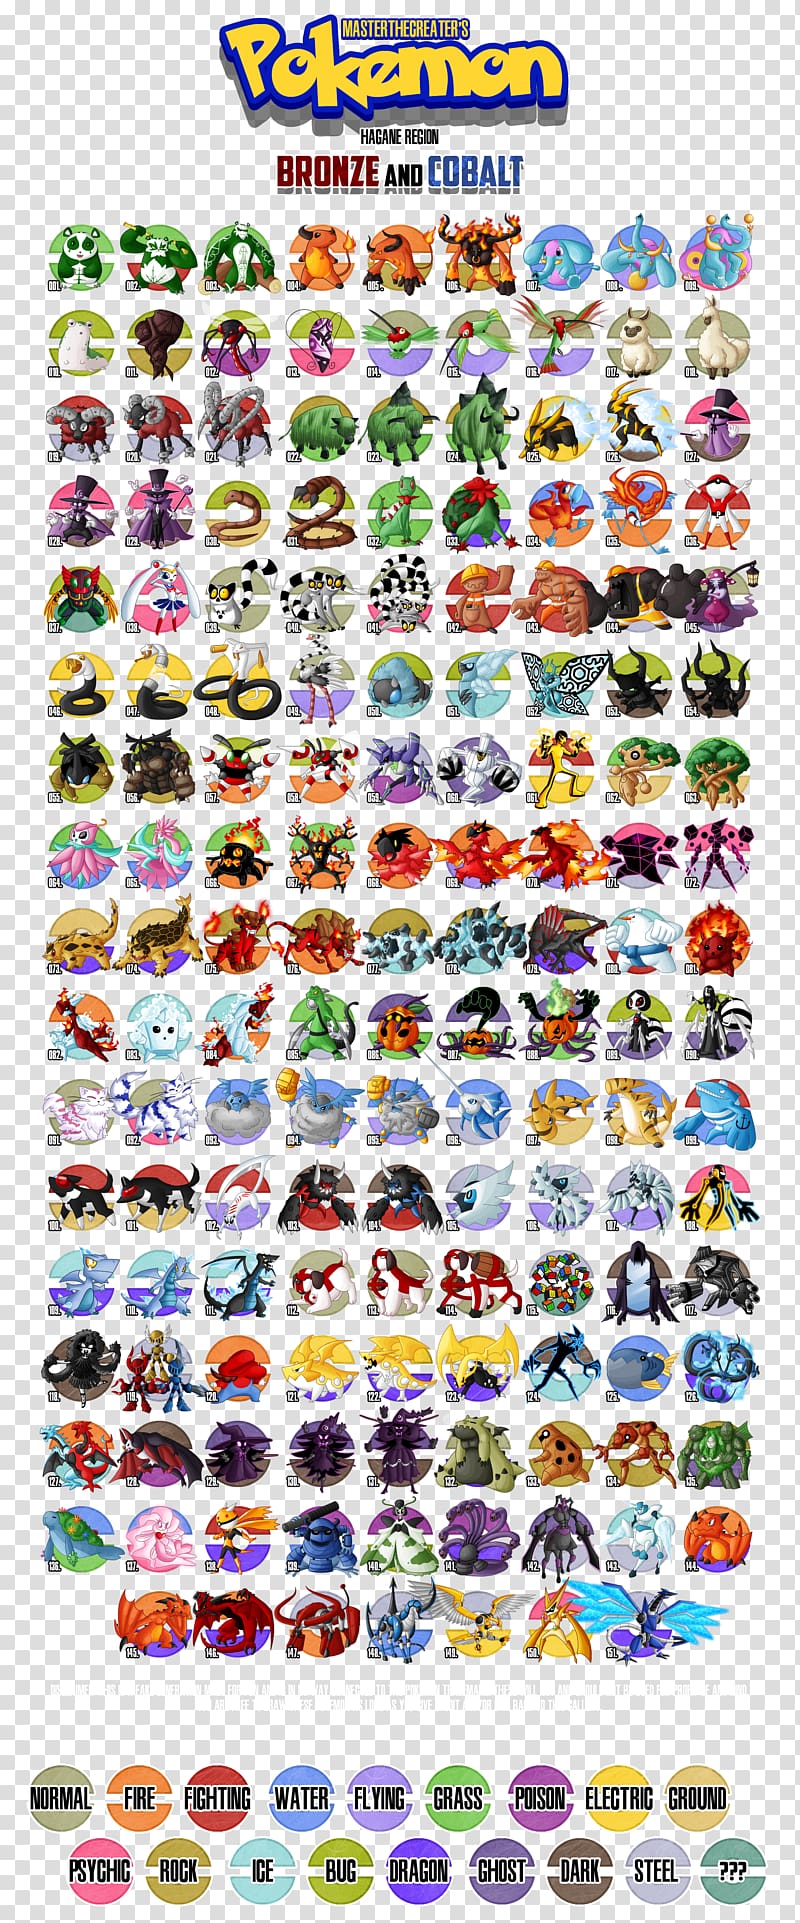 Pokémon Diamond and Pearl Pokédex Misty Pokémon Omega Ruby and Alpha Sapphire, others transparent background PNG clipart